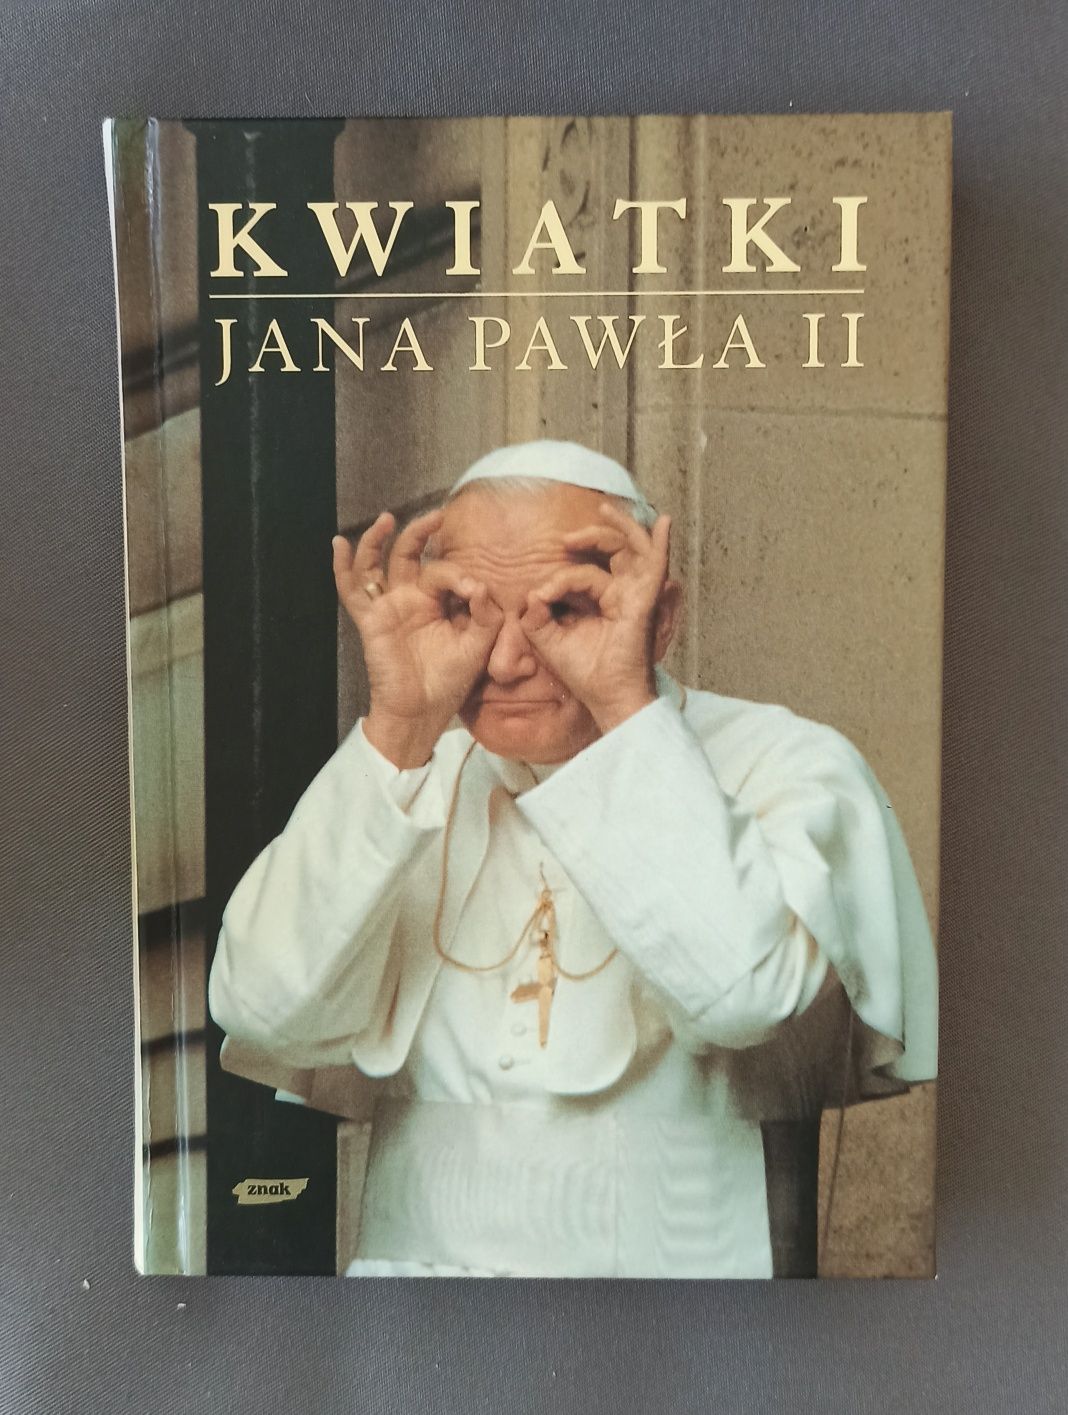 Sprzedam książkę "Kwiatki Jana Pawła II"